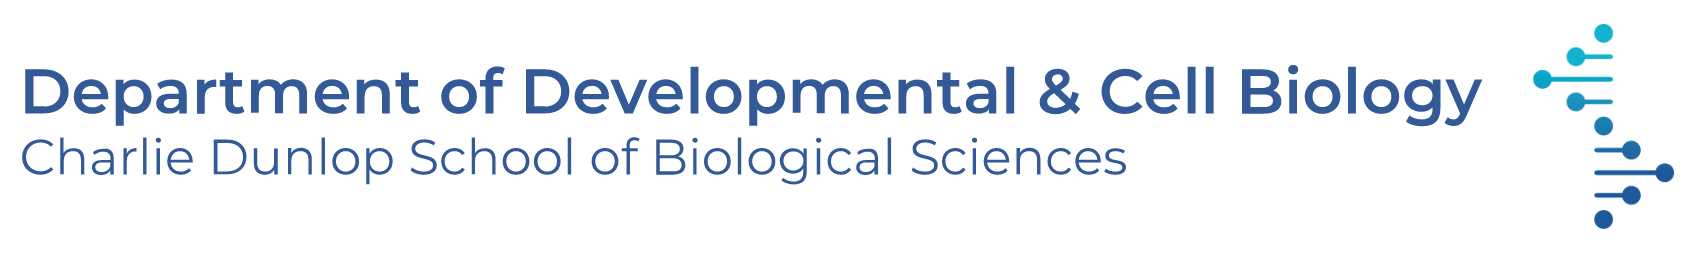 UC Irvine Dunlop School Department of Developmental & Cell Biology